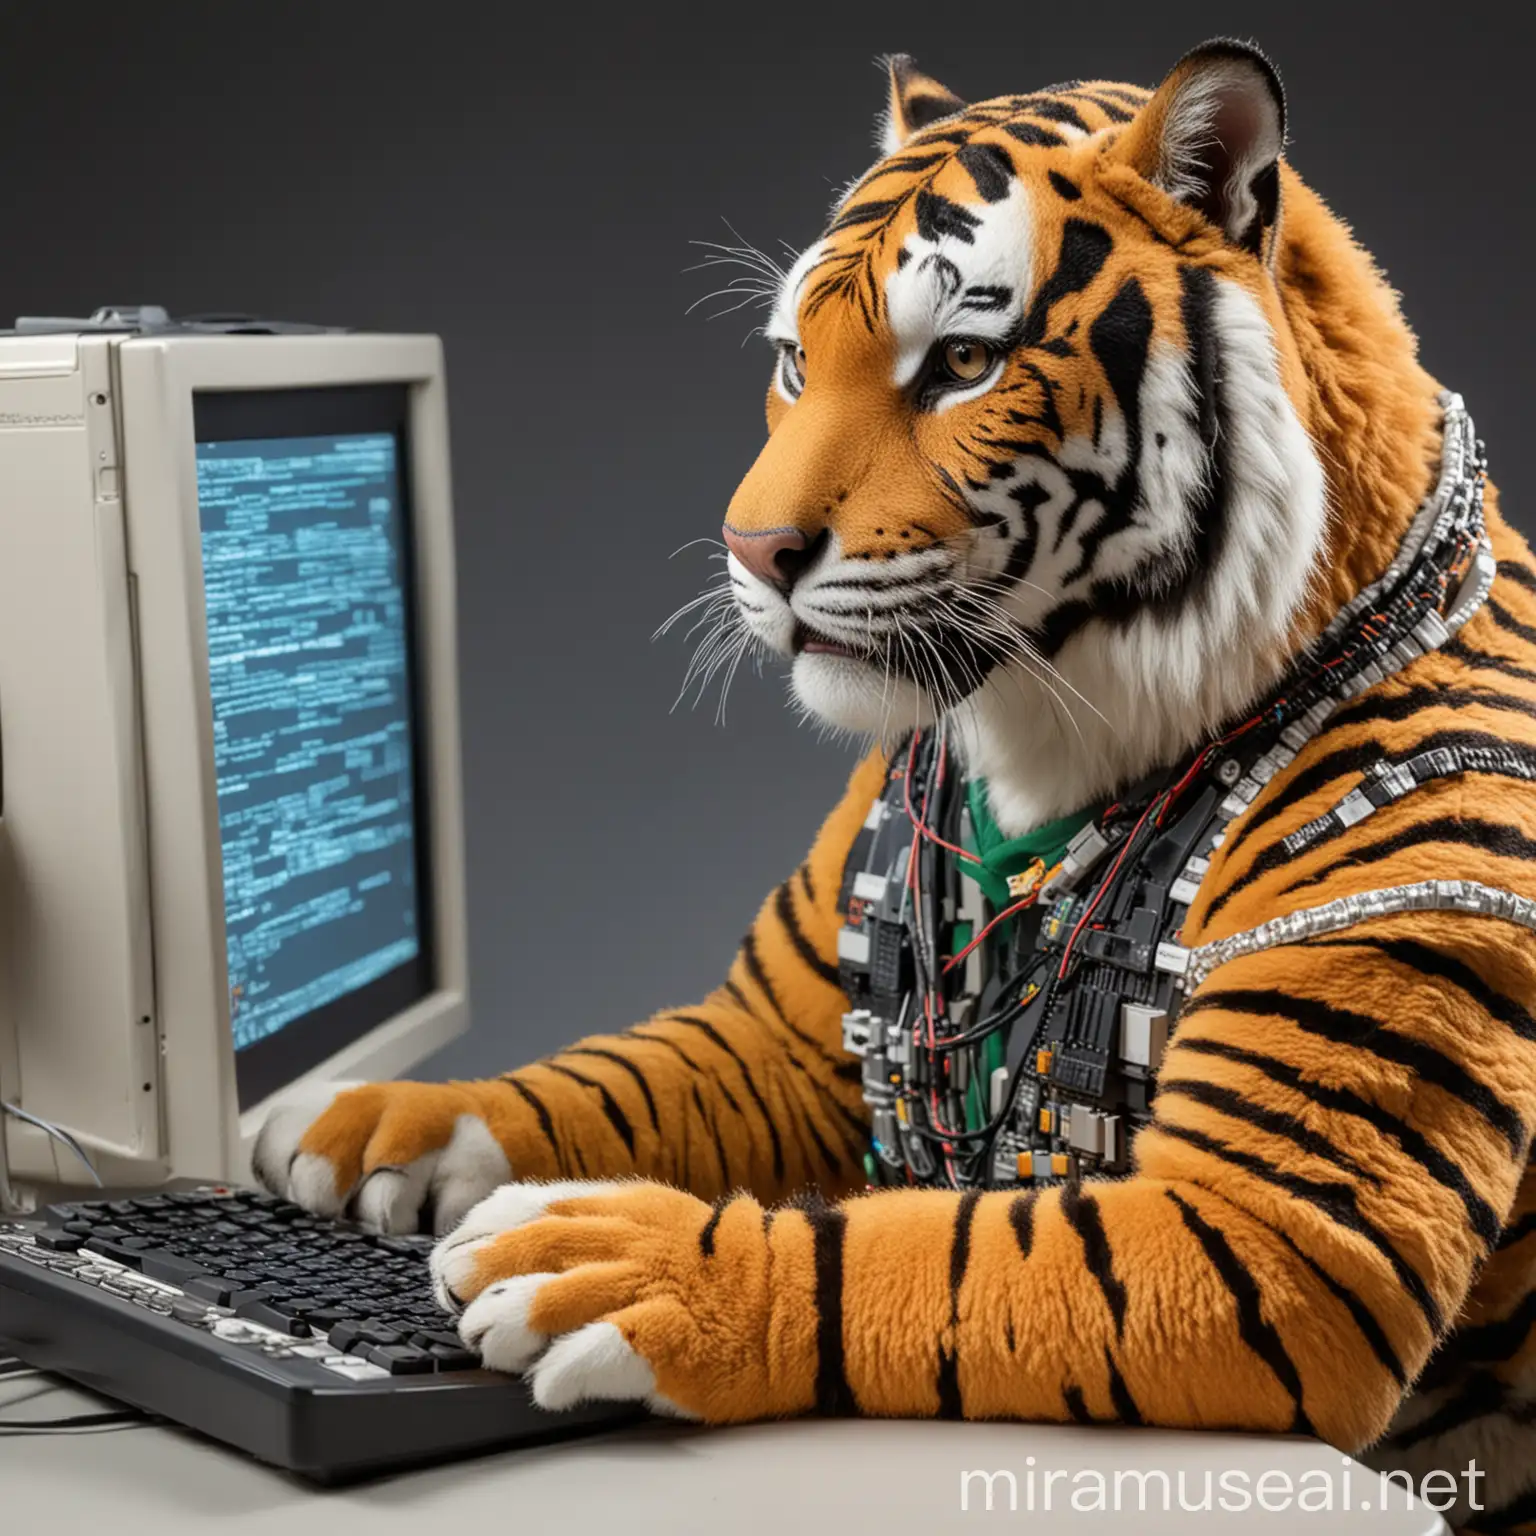 Tigre vestido de ingeniero en sistemas programando un sistema en una computadora